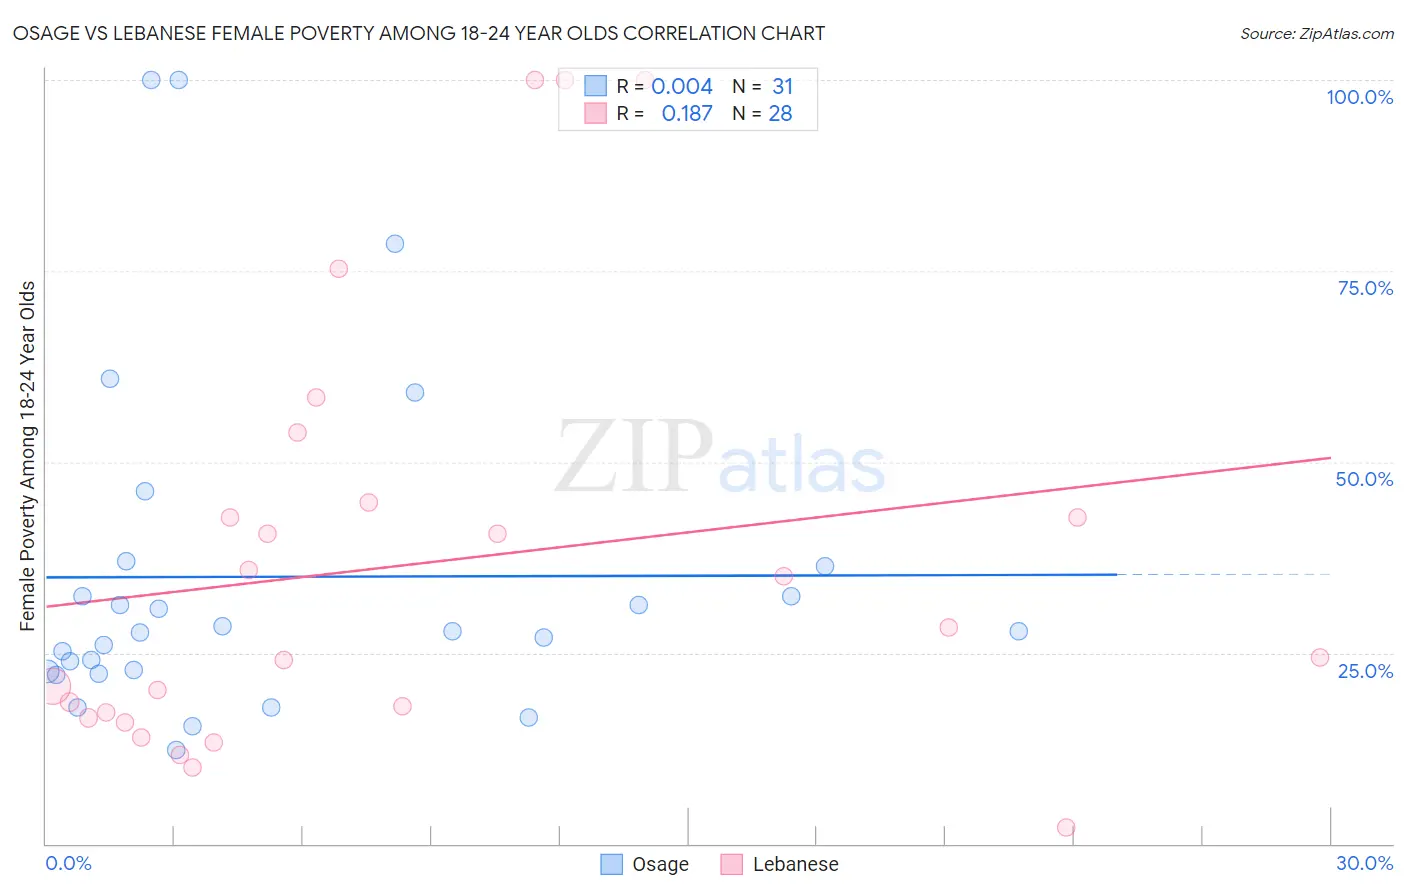 Osage vs Lebanese Female Poverty Among 18-24 Year Olds